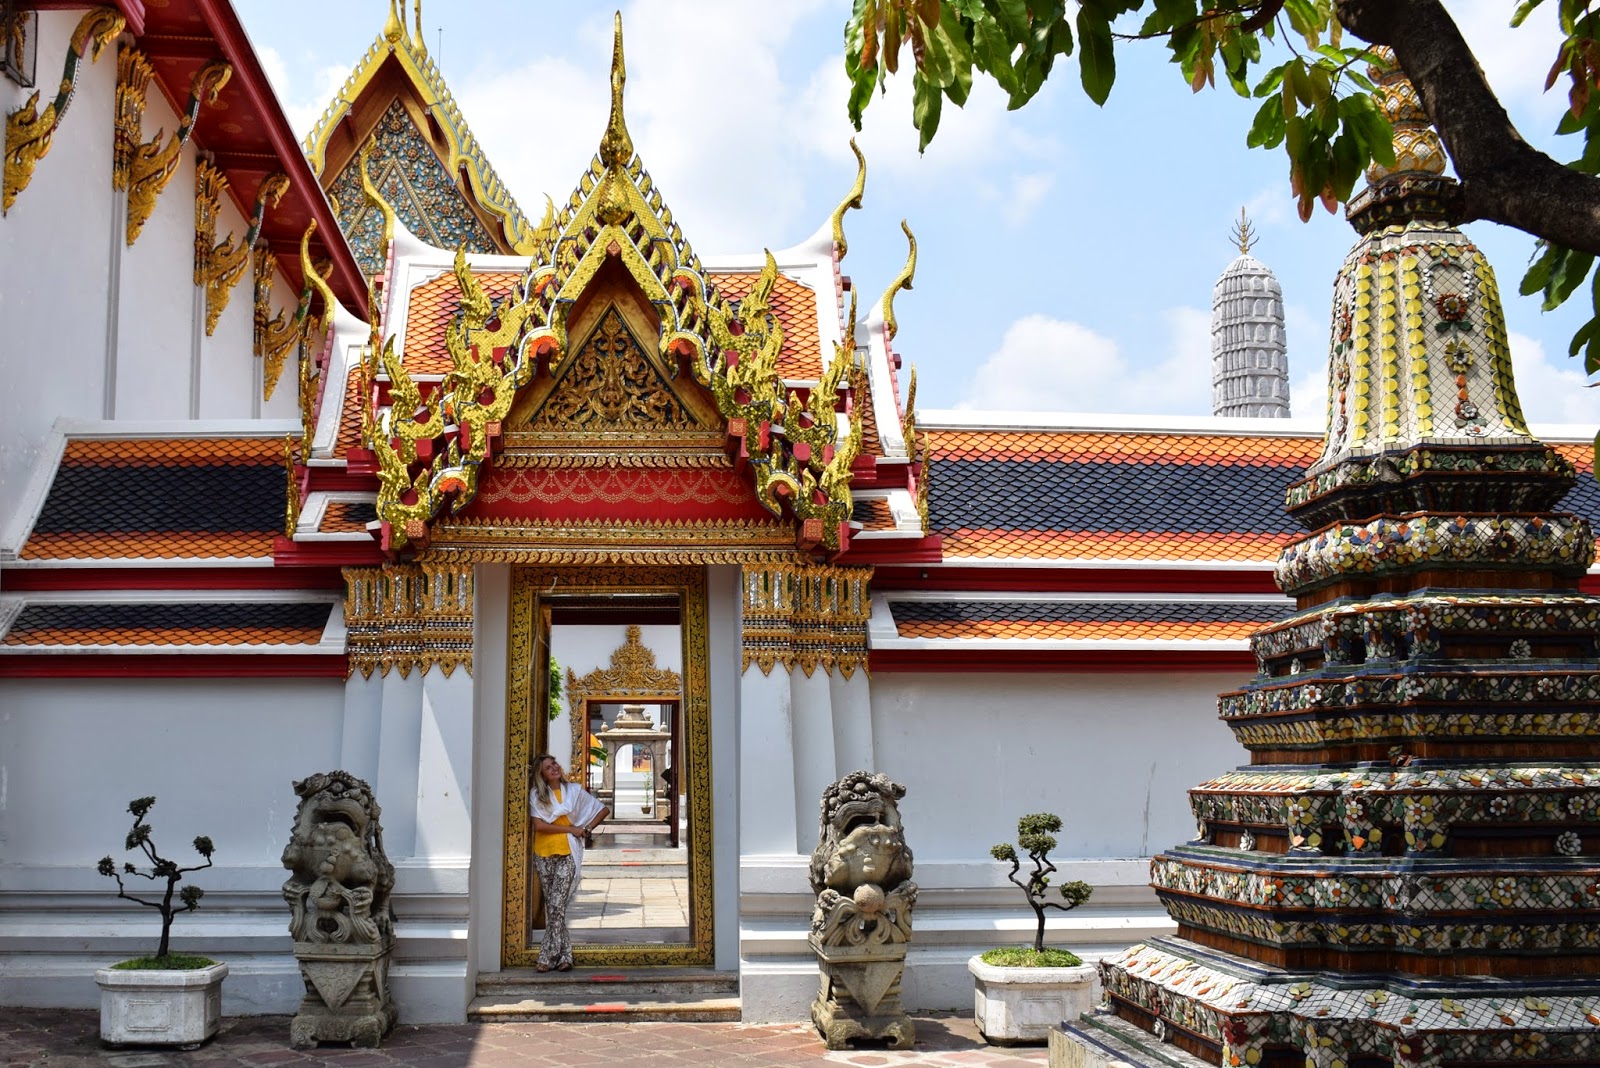 lua de mel mes a mes - templo wat po Bangkok - Tailandia